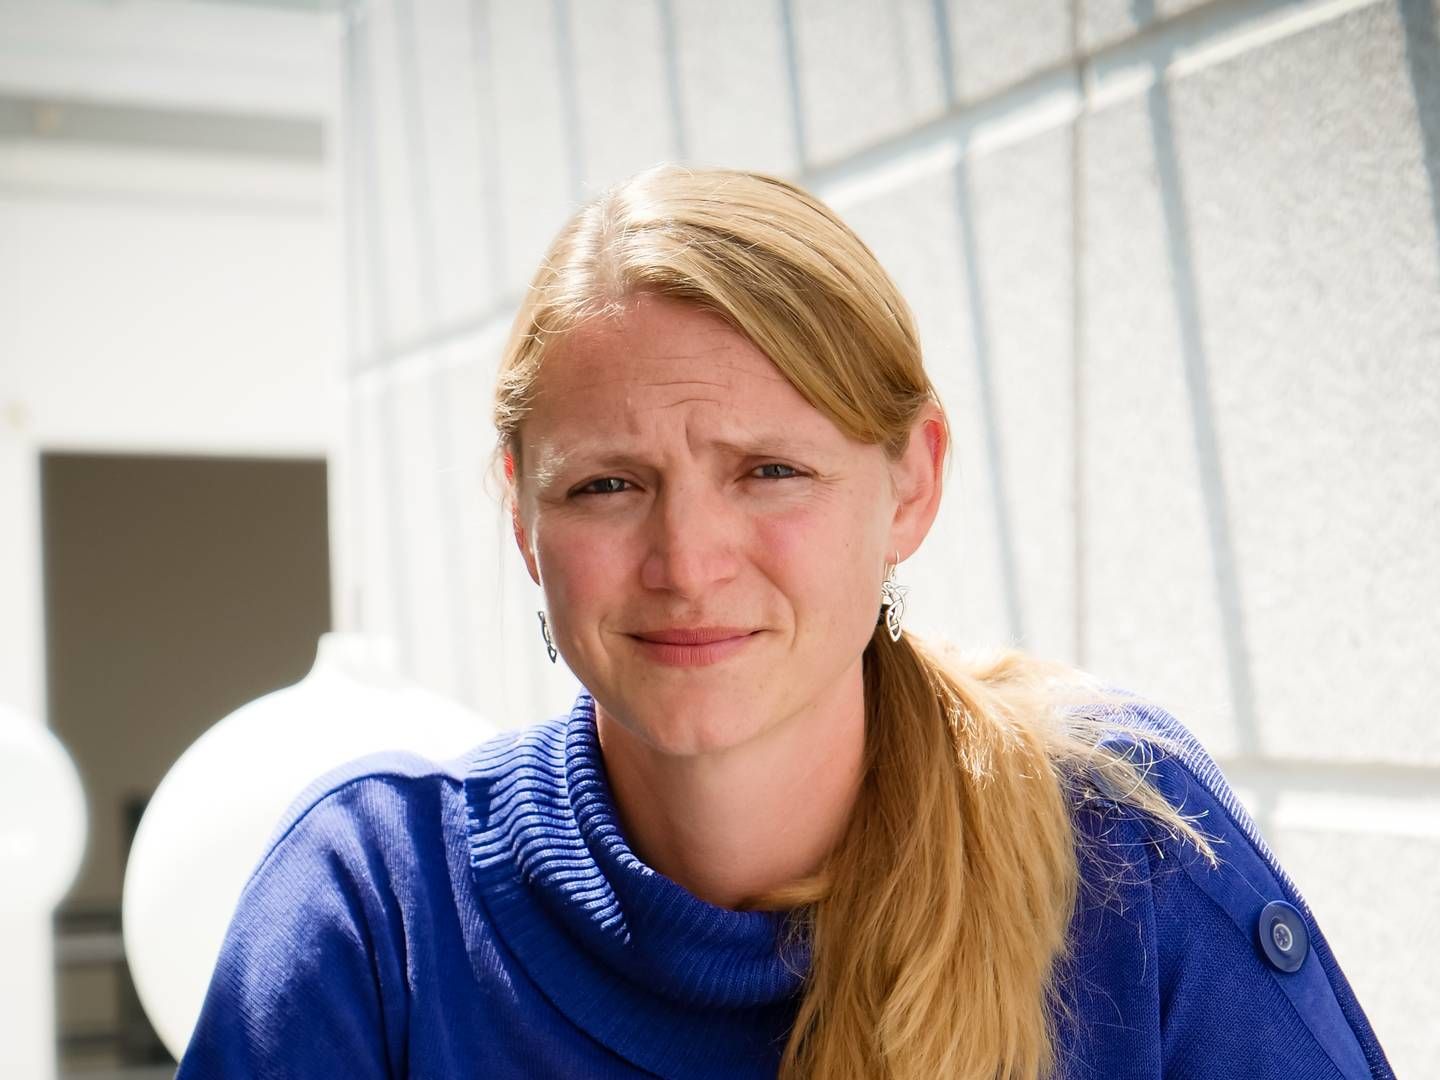 Forsker i data science Sine Zambach mener ikke, at kvoter nødvendigvis giver mere ligestilling i it-branchen. Hun ønsker i stedet en generel kulturel ændring med lige adgang for alle køn. | Foto: PR / Sine Zambach